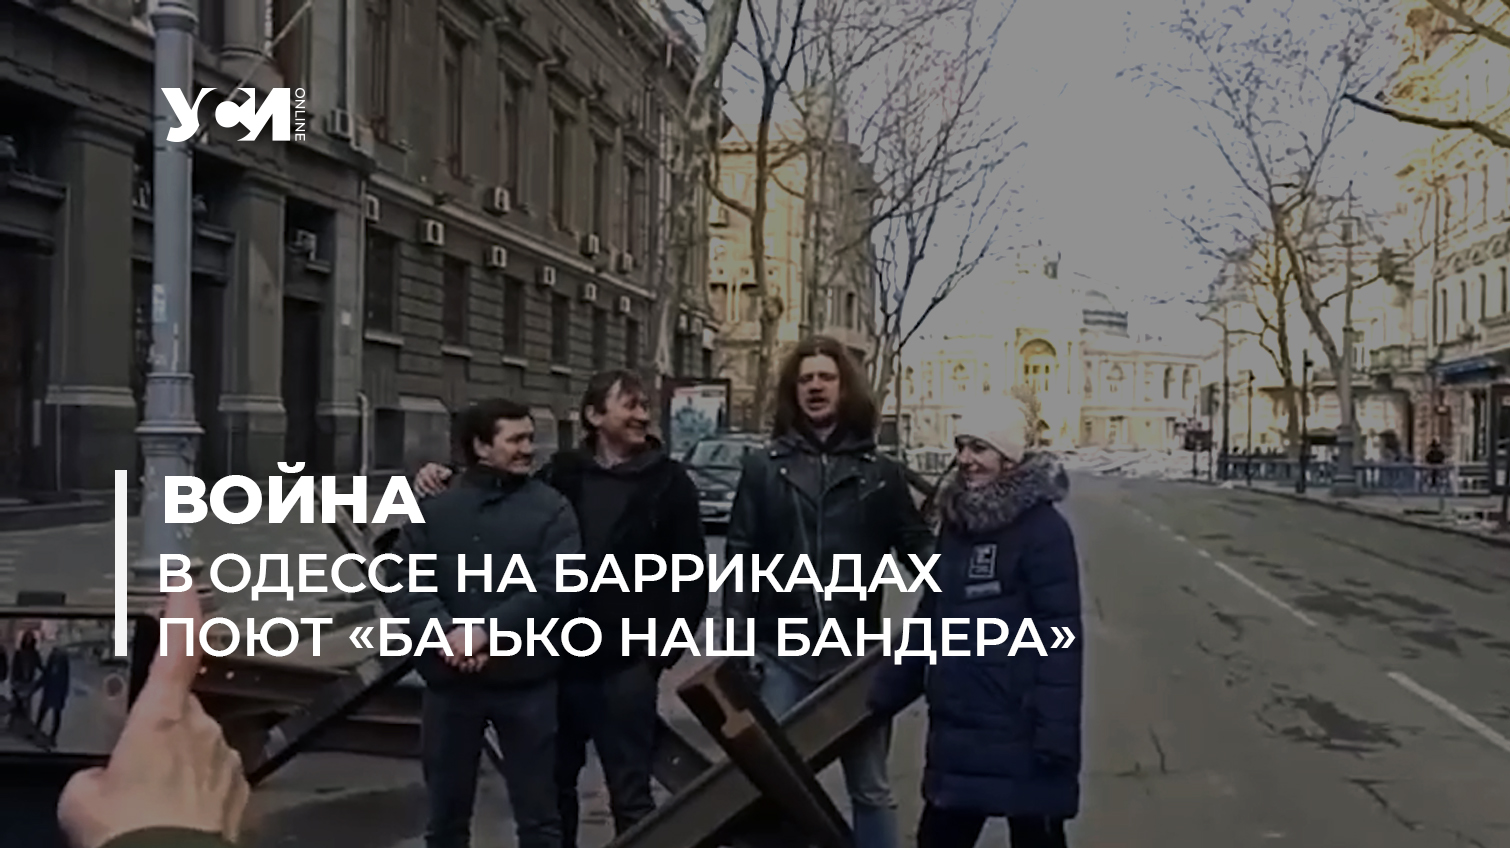 Солисты Одесского оперного спели песню «Батько наш Бандера» на баррикадах (видео) «фото»